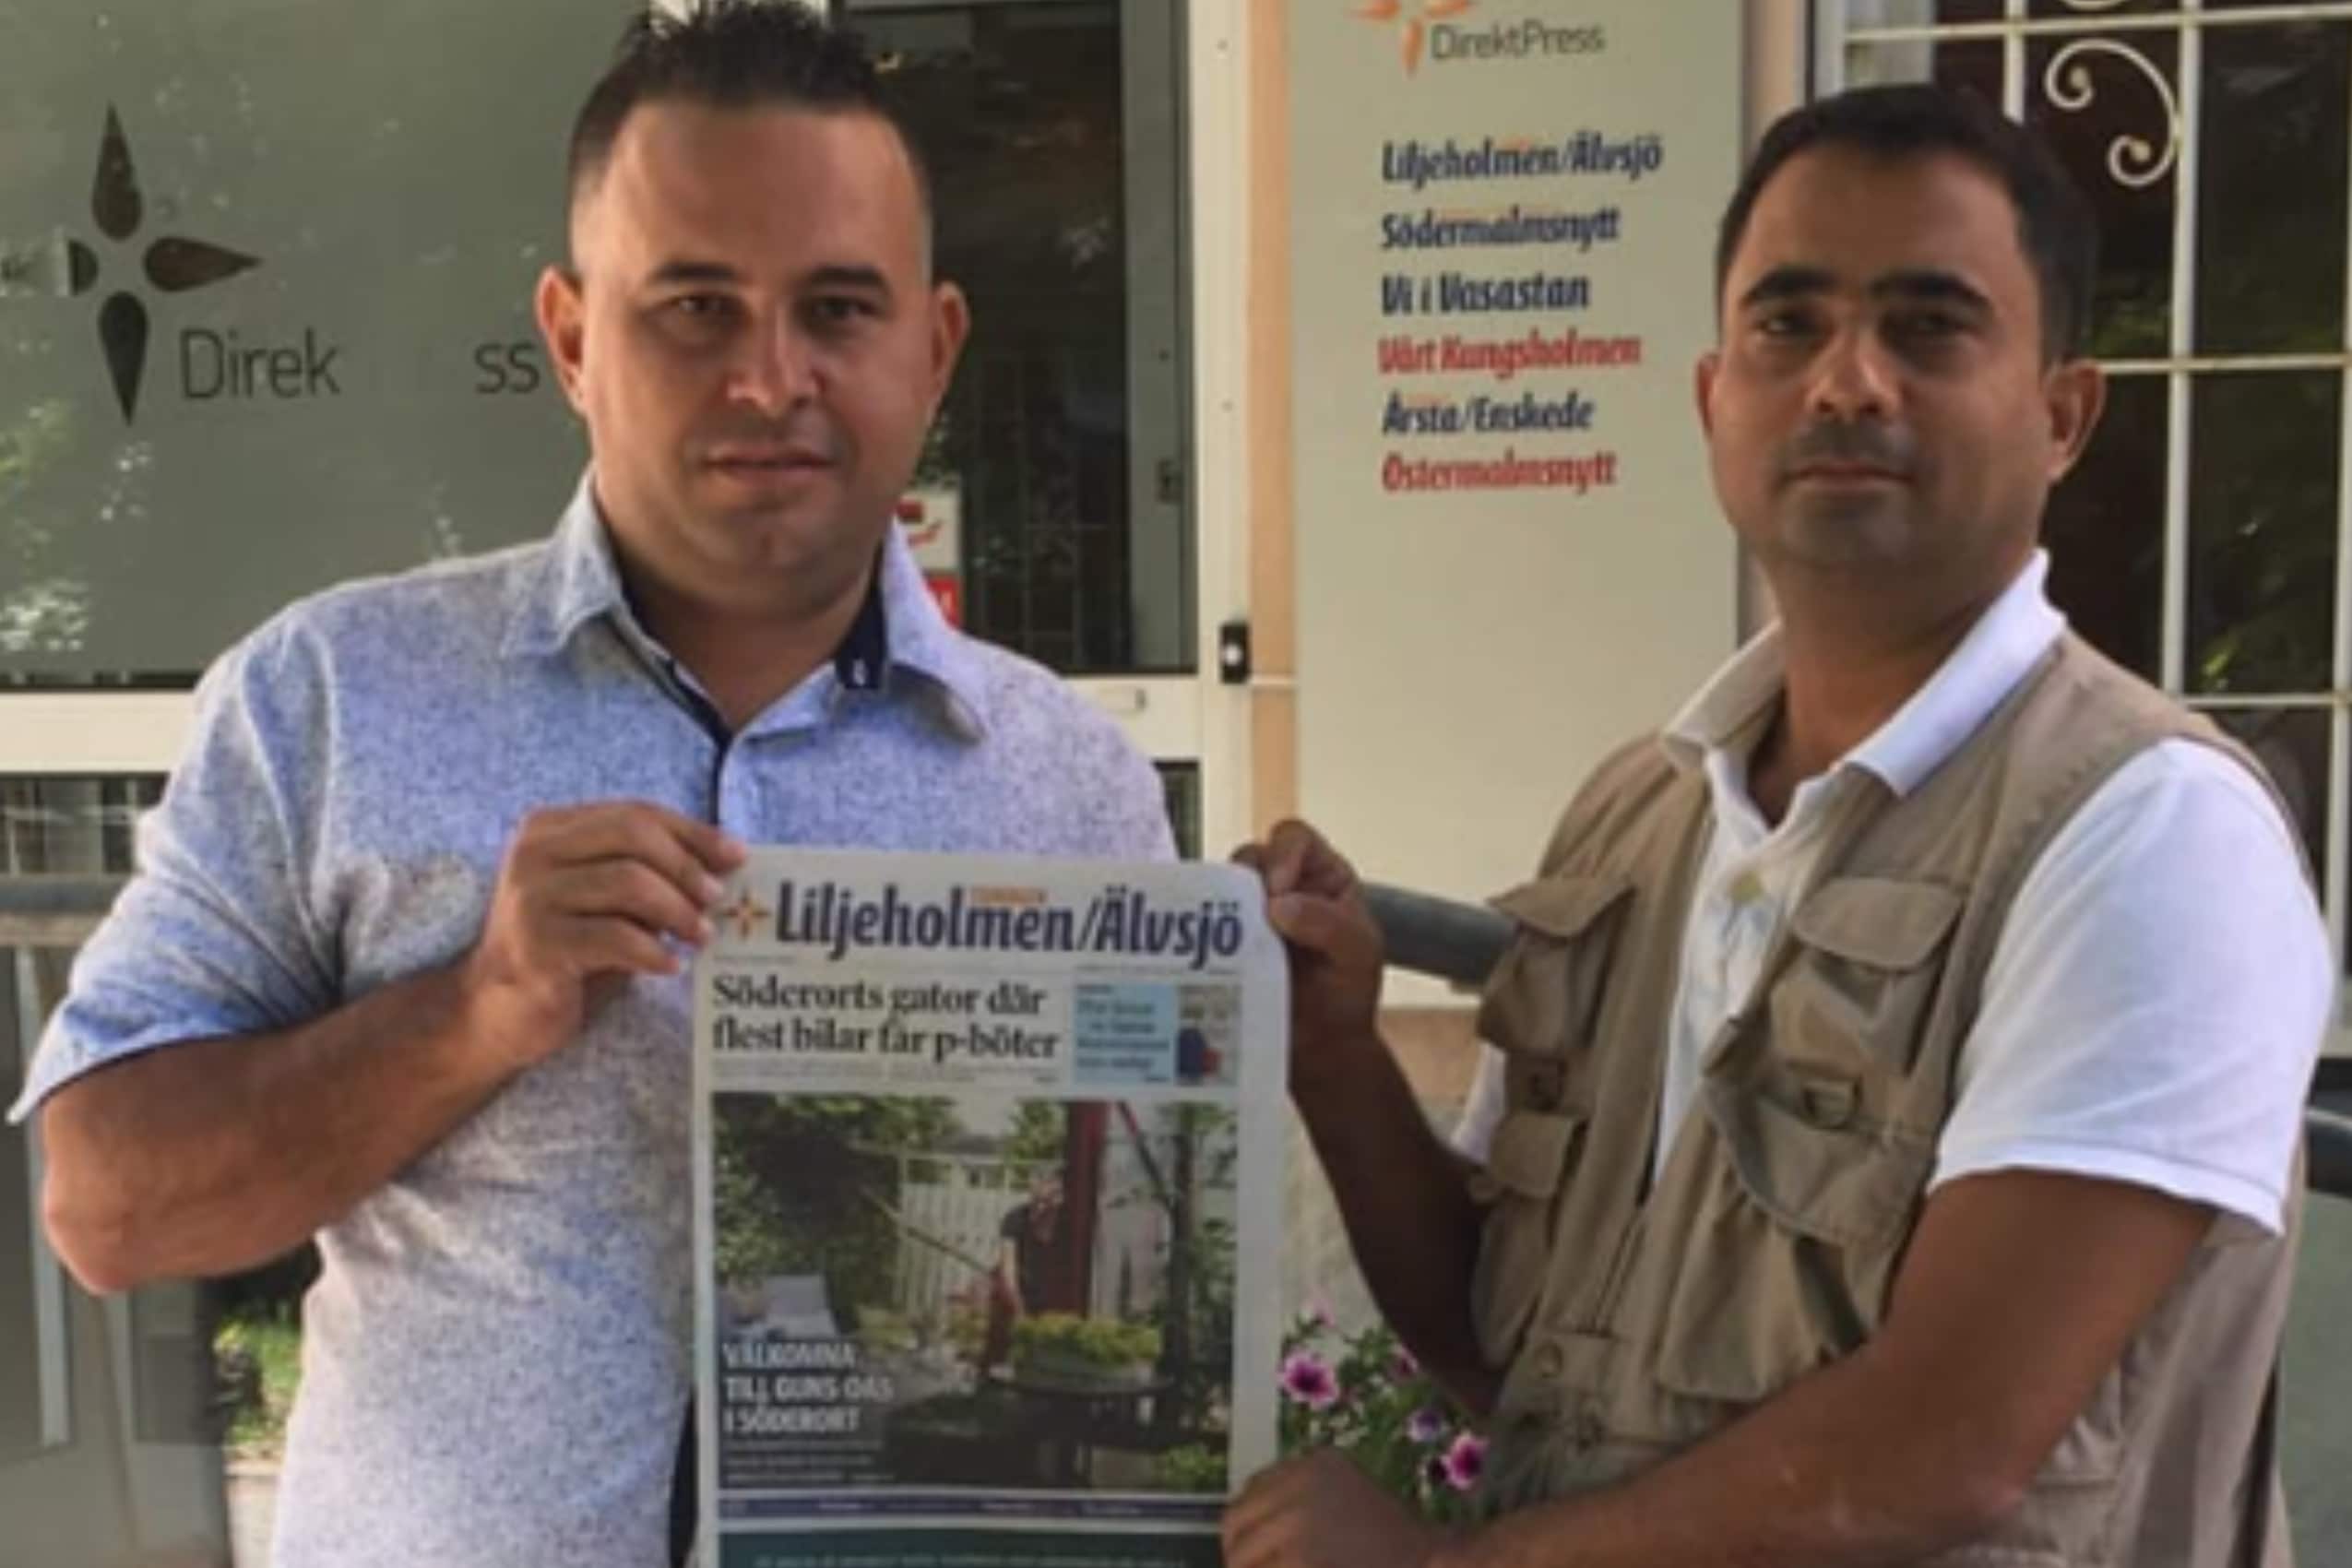 Arrestan de forma arbitraria a los reporteros de CubaNet Vladimir Turró y Enrique Díaz